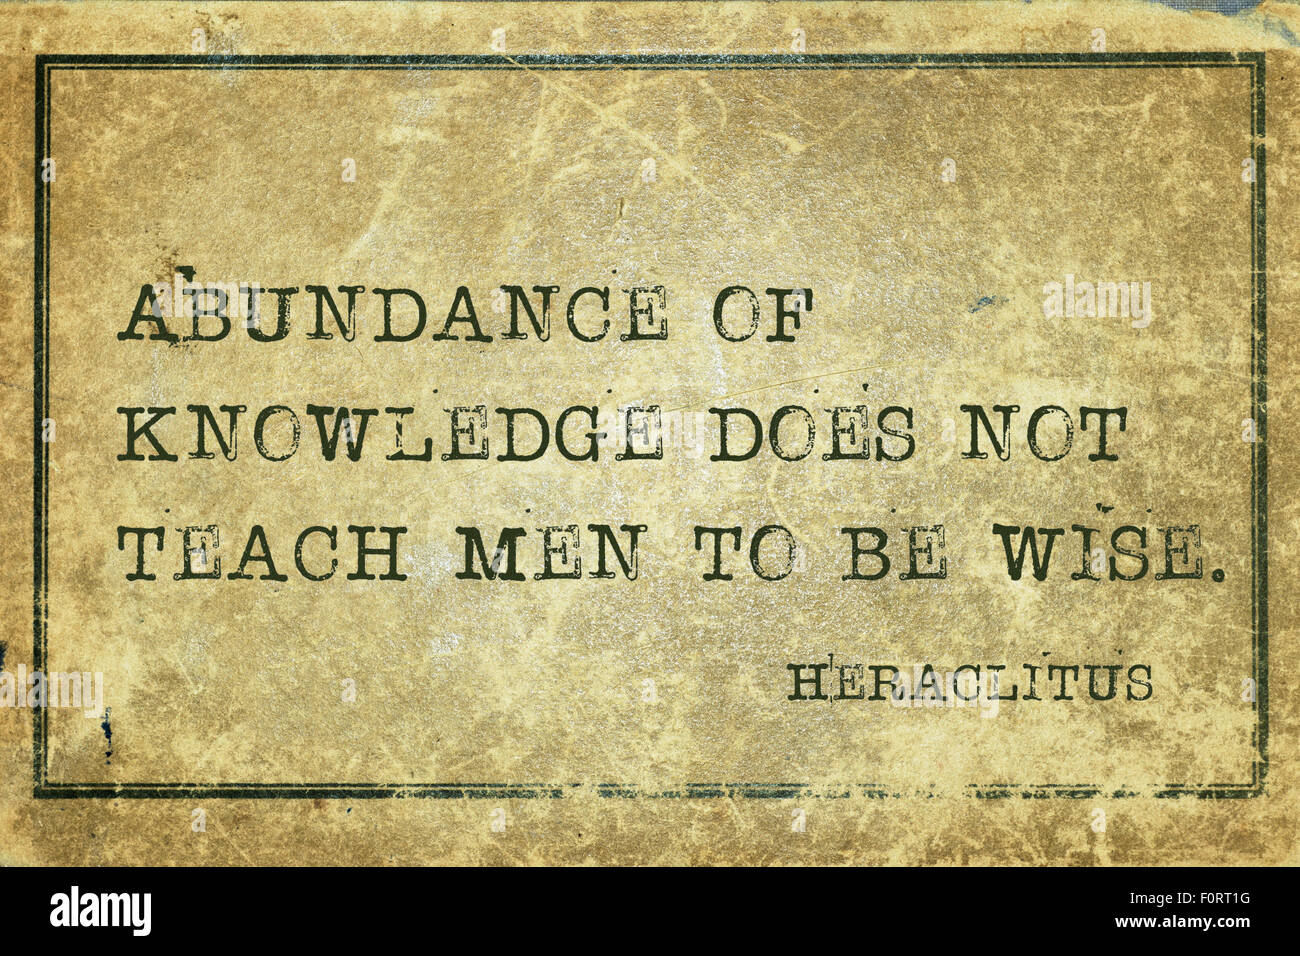 Fülle von Wissen lehrt nicht, Männer klug - der griechische Philosoph Heraclitus Zitat auf Grunge Vintage Karte gedruckt Stockfoto